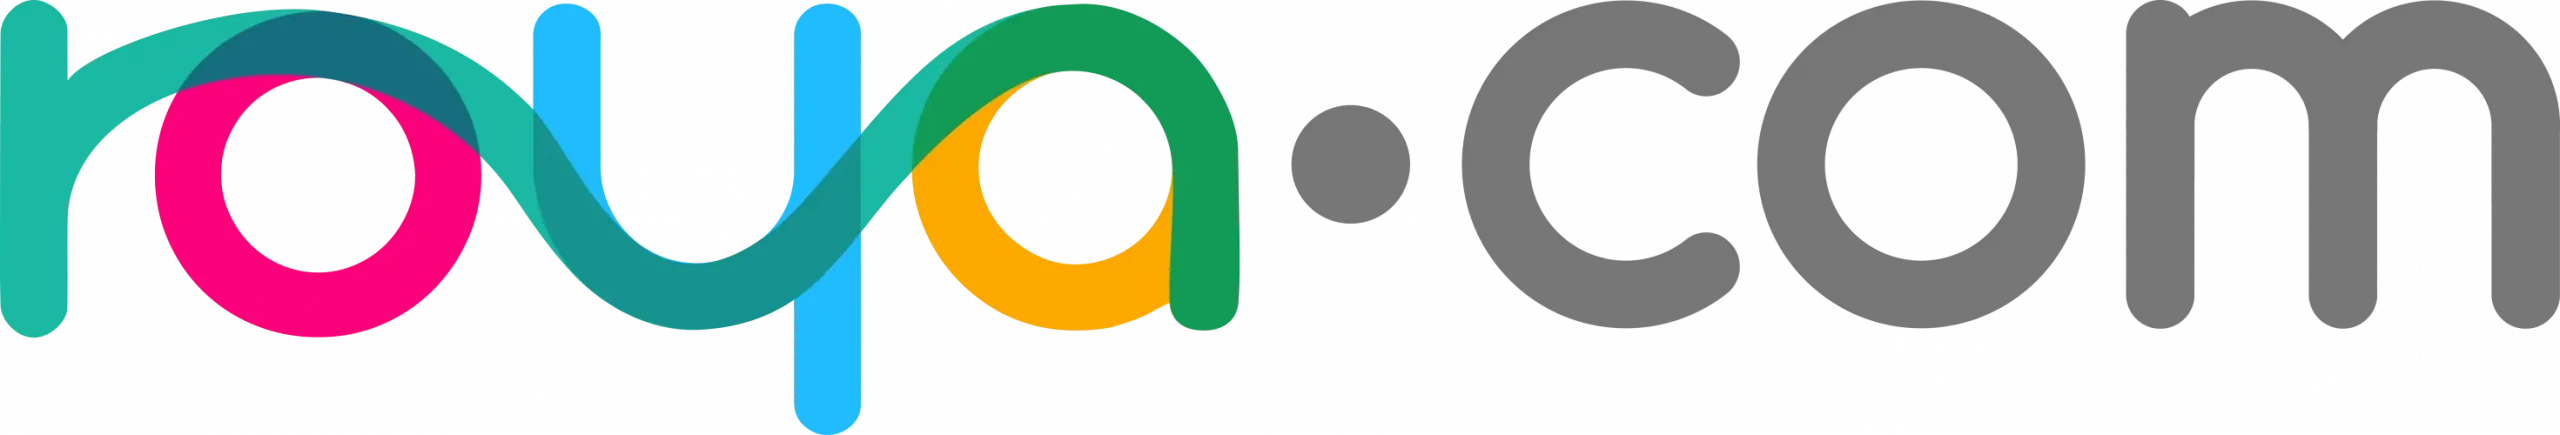 roya logo scaled